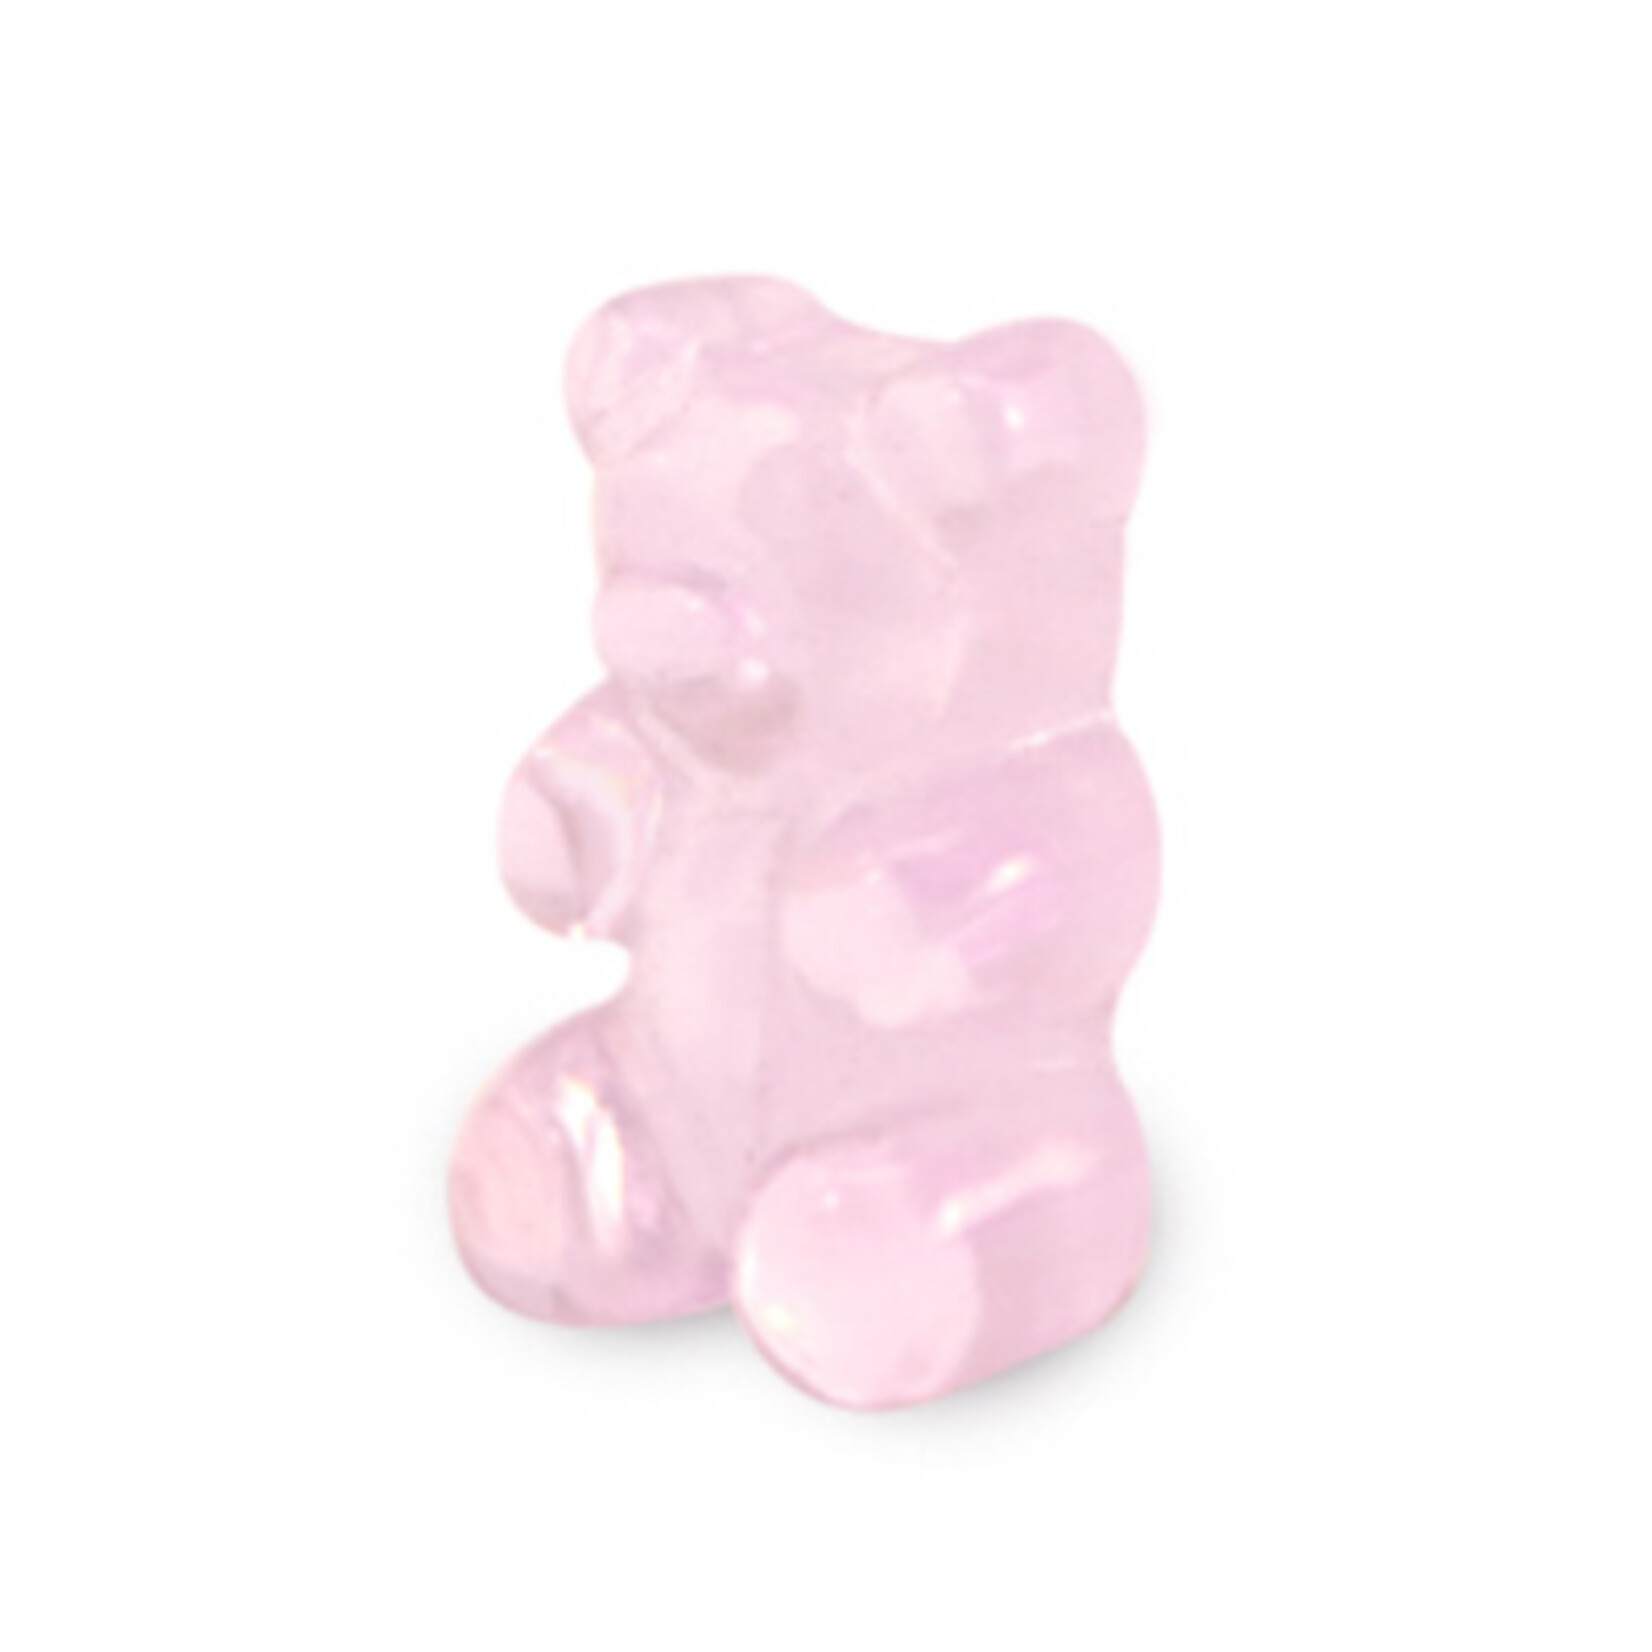 Kraal gummy bear lichtroze (1x)